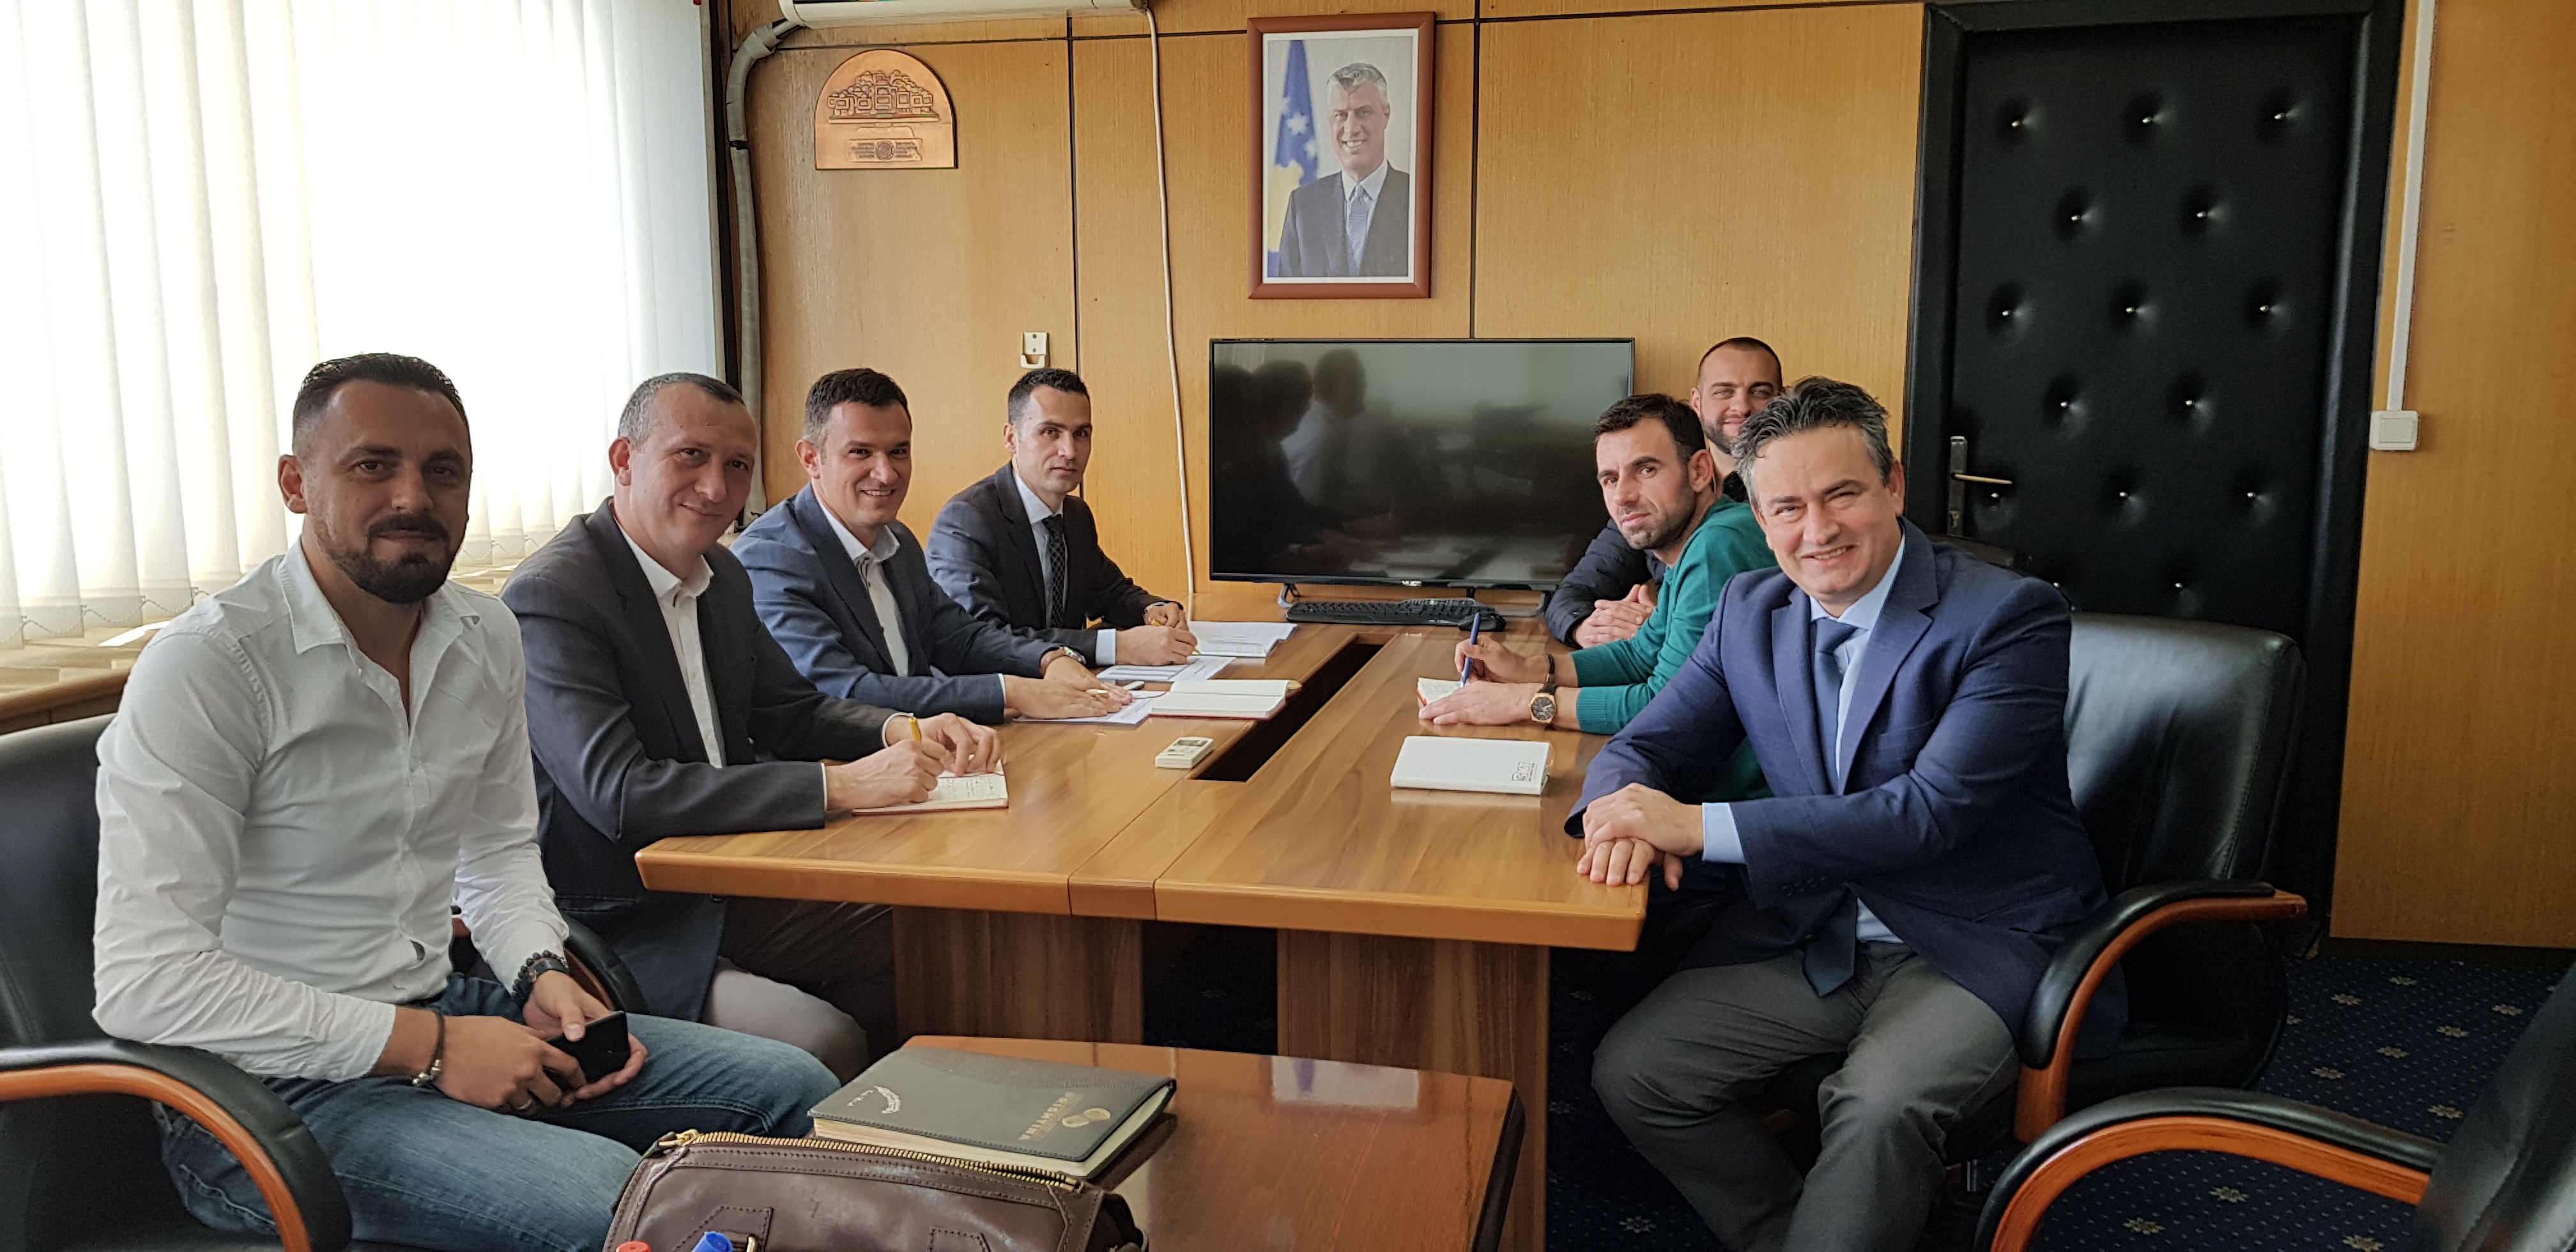 Posta e Kosovës dhe KRU ” Prishtina ” bashkëpunojn në të mirë të qytetarëve